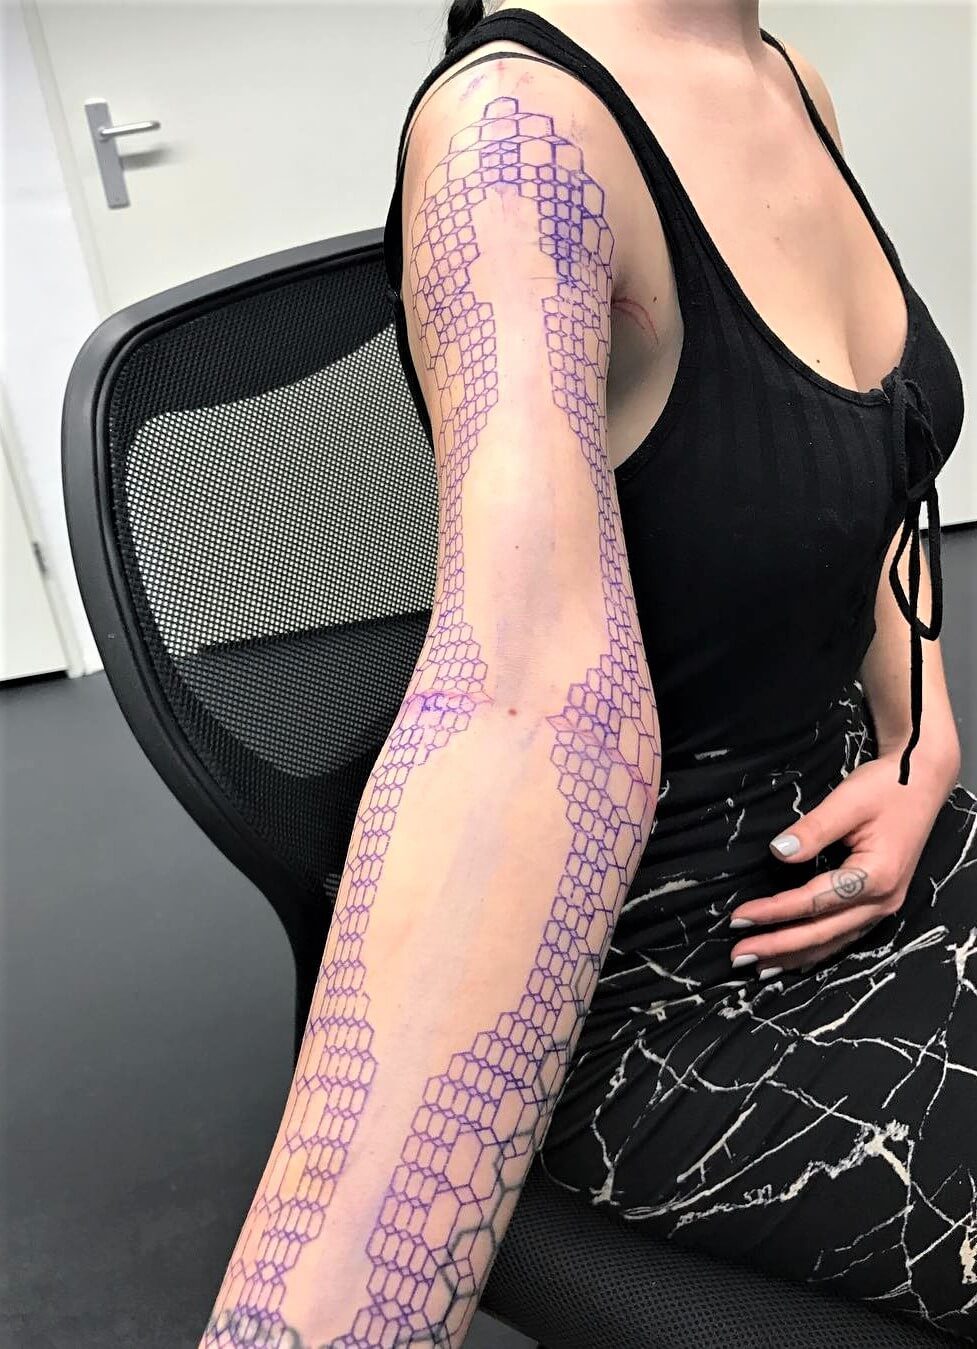 Geometric sleeve tattoo patterns